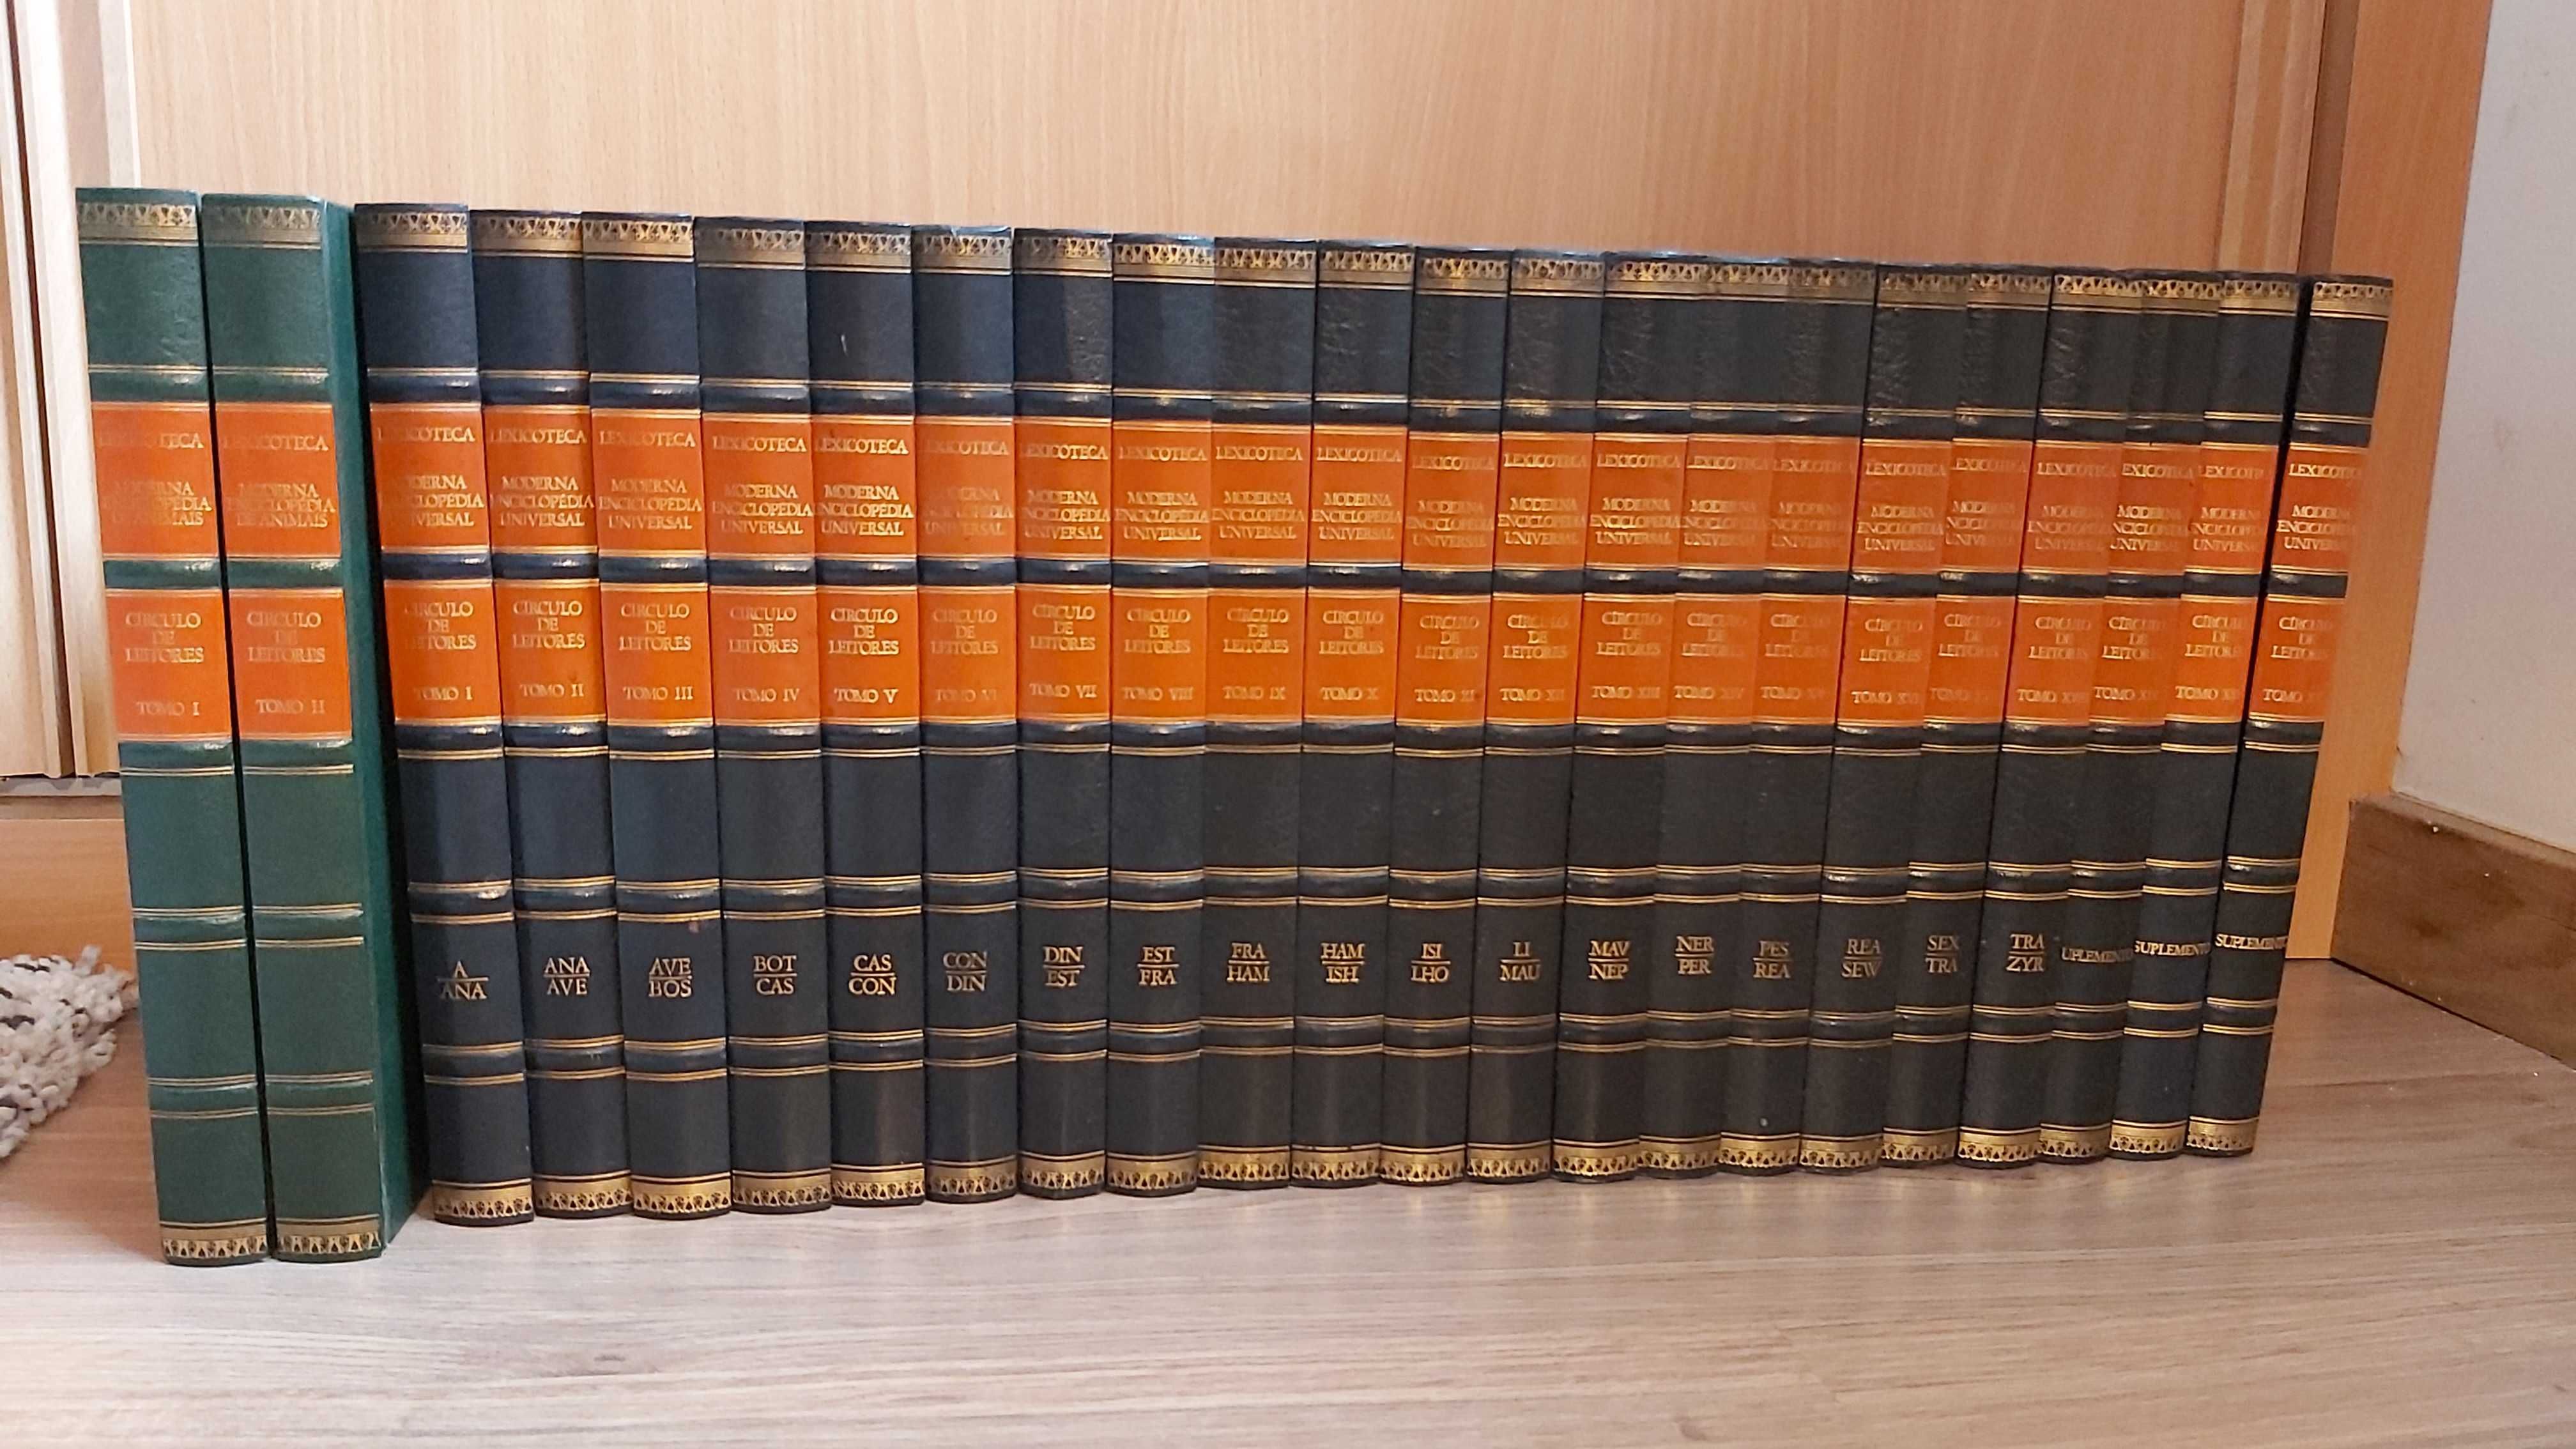 Lexicoteca Moderna Enciclopédia Universal